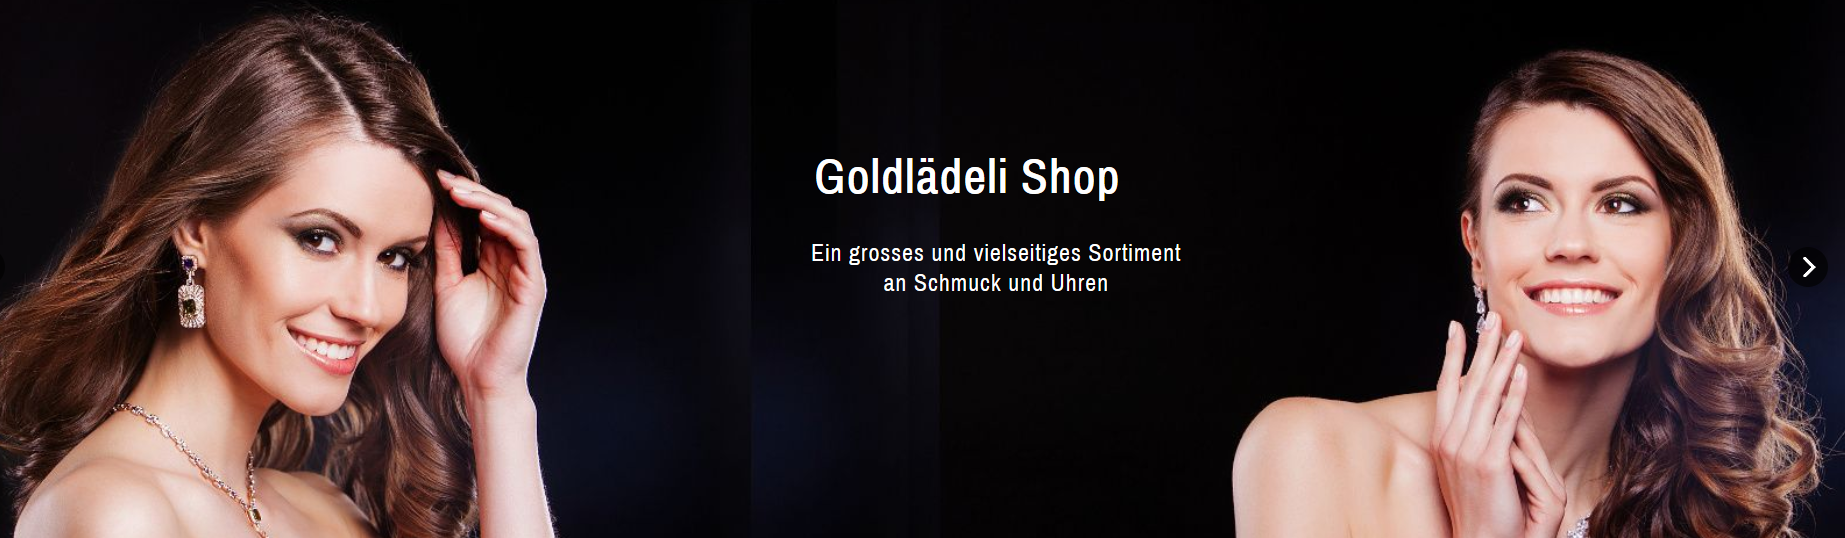 Bilder Goldlädeli AG